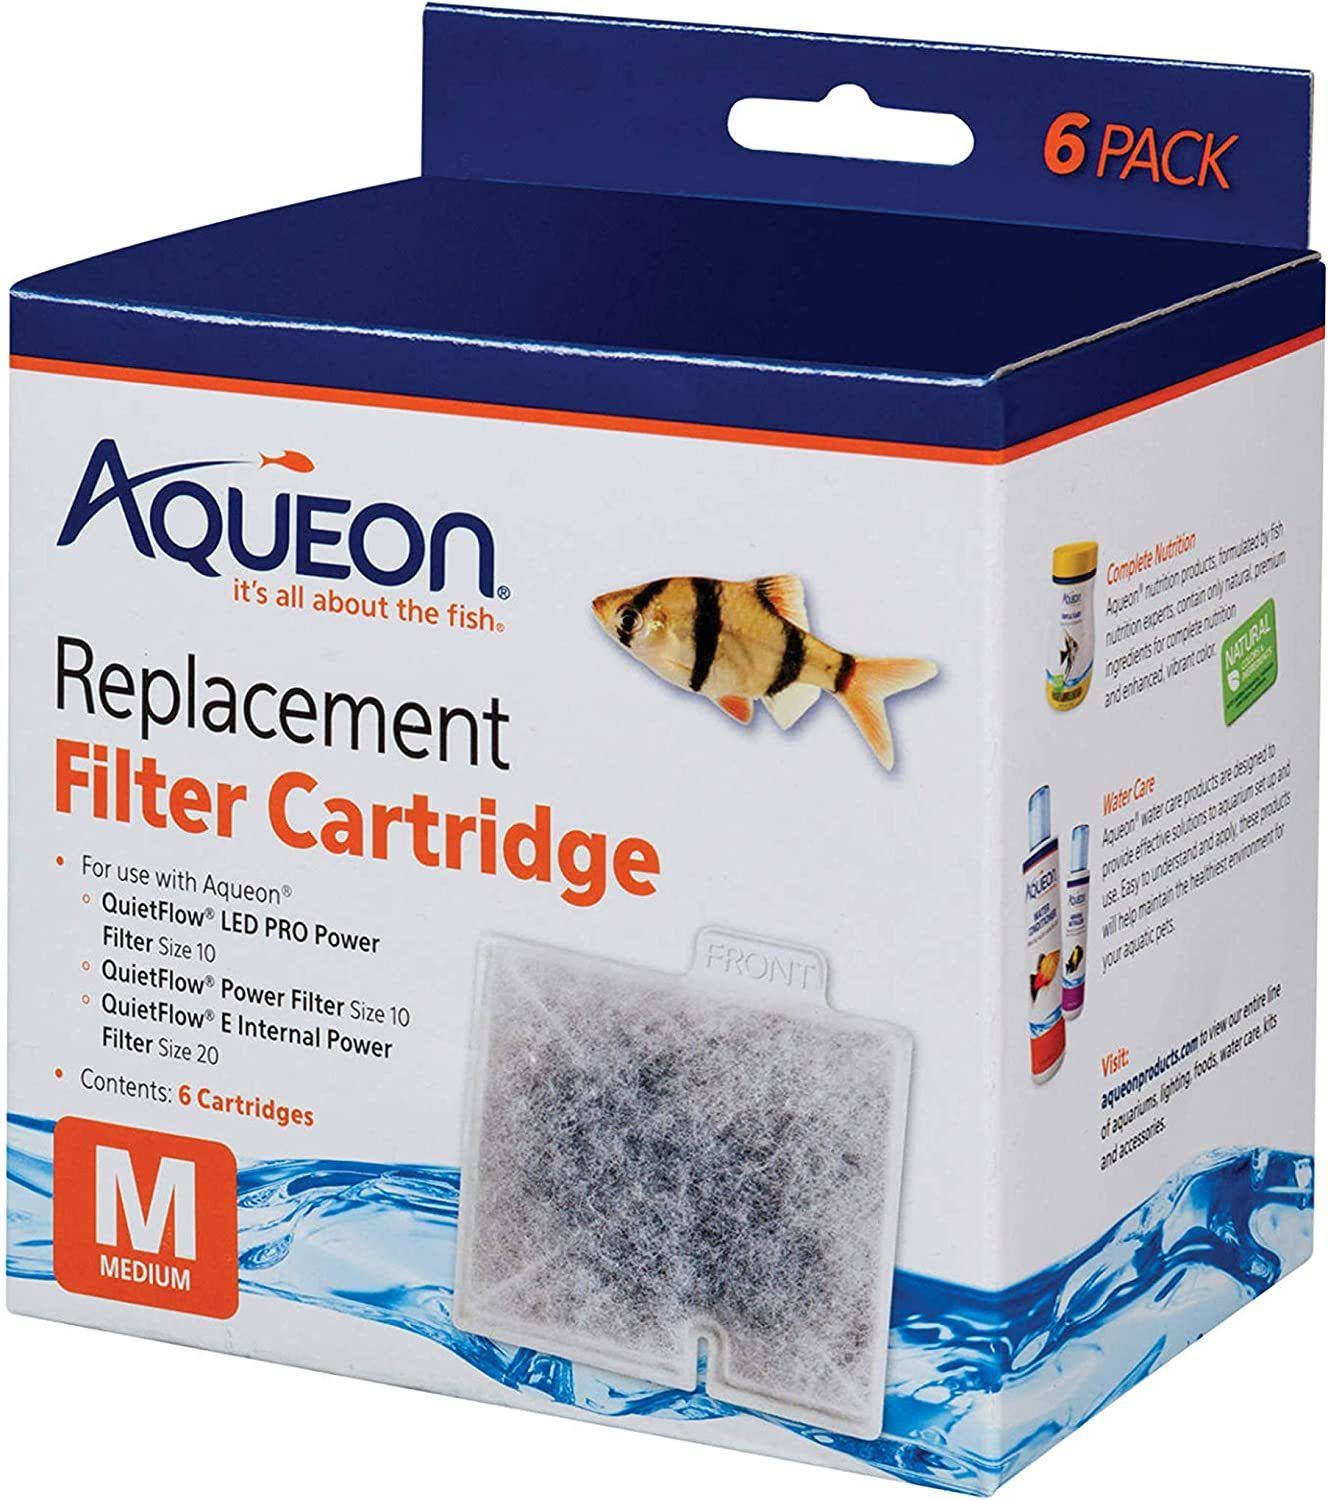 Aqueon QuietFlow Replacement Filter Cartridge - Medium (6 Pack)